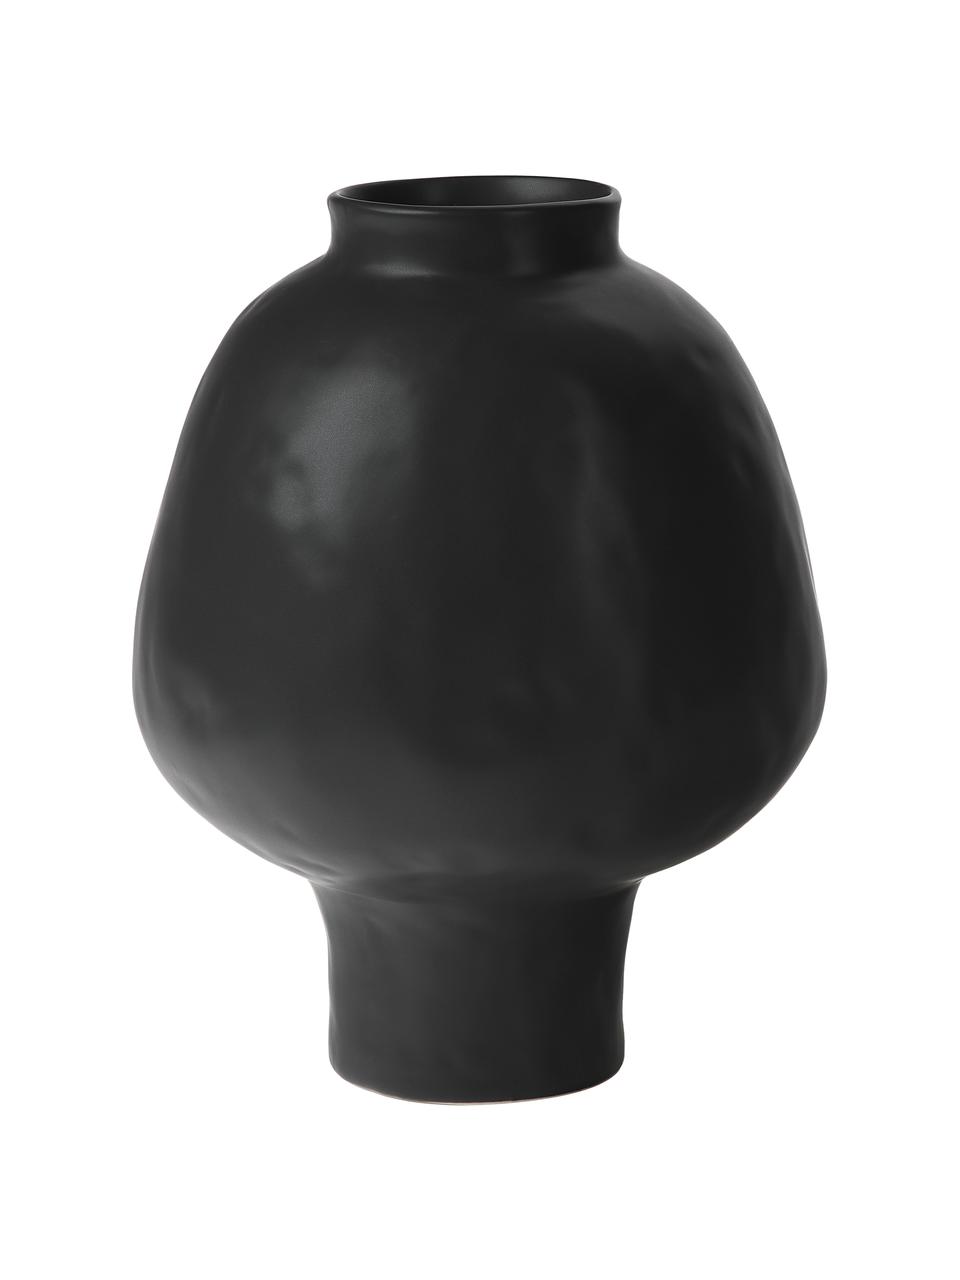 Handgefertigte Vase Saki aus Keramik in Schwarz, Keramik, Schwarz, Ø 25 x H 32 cm